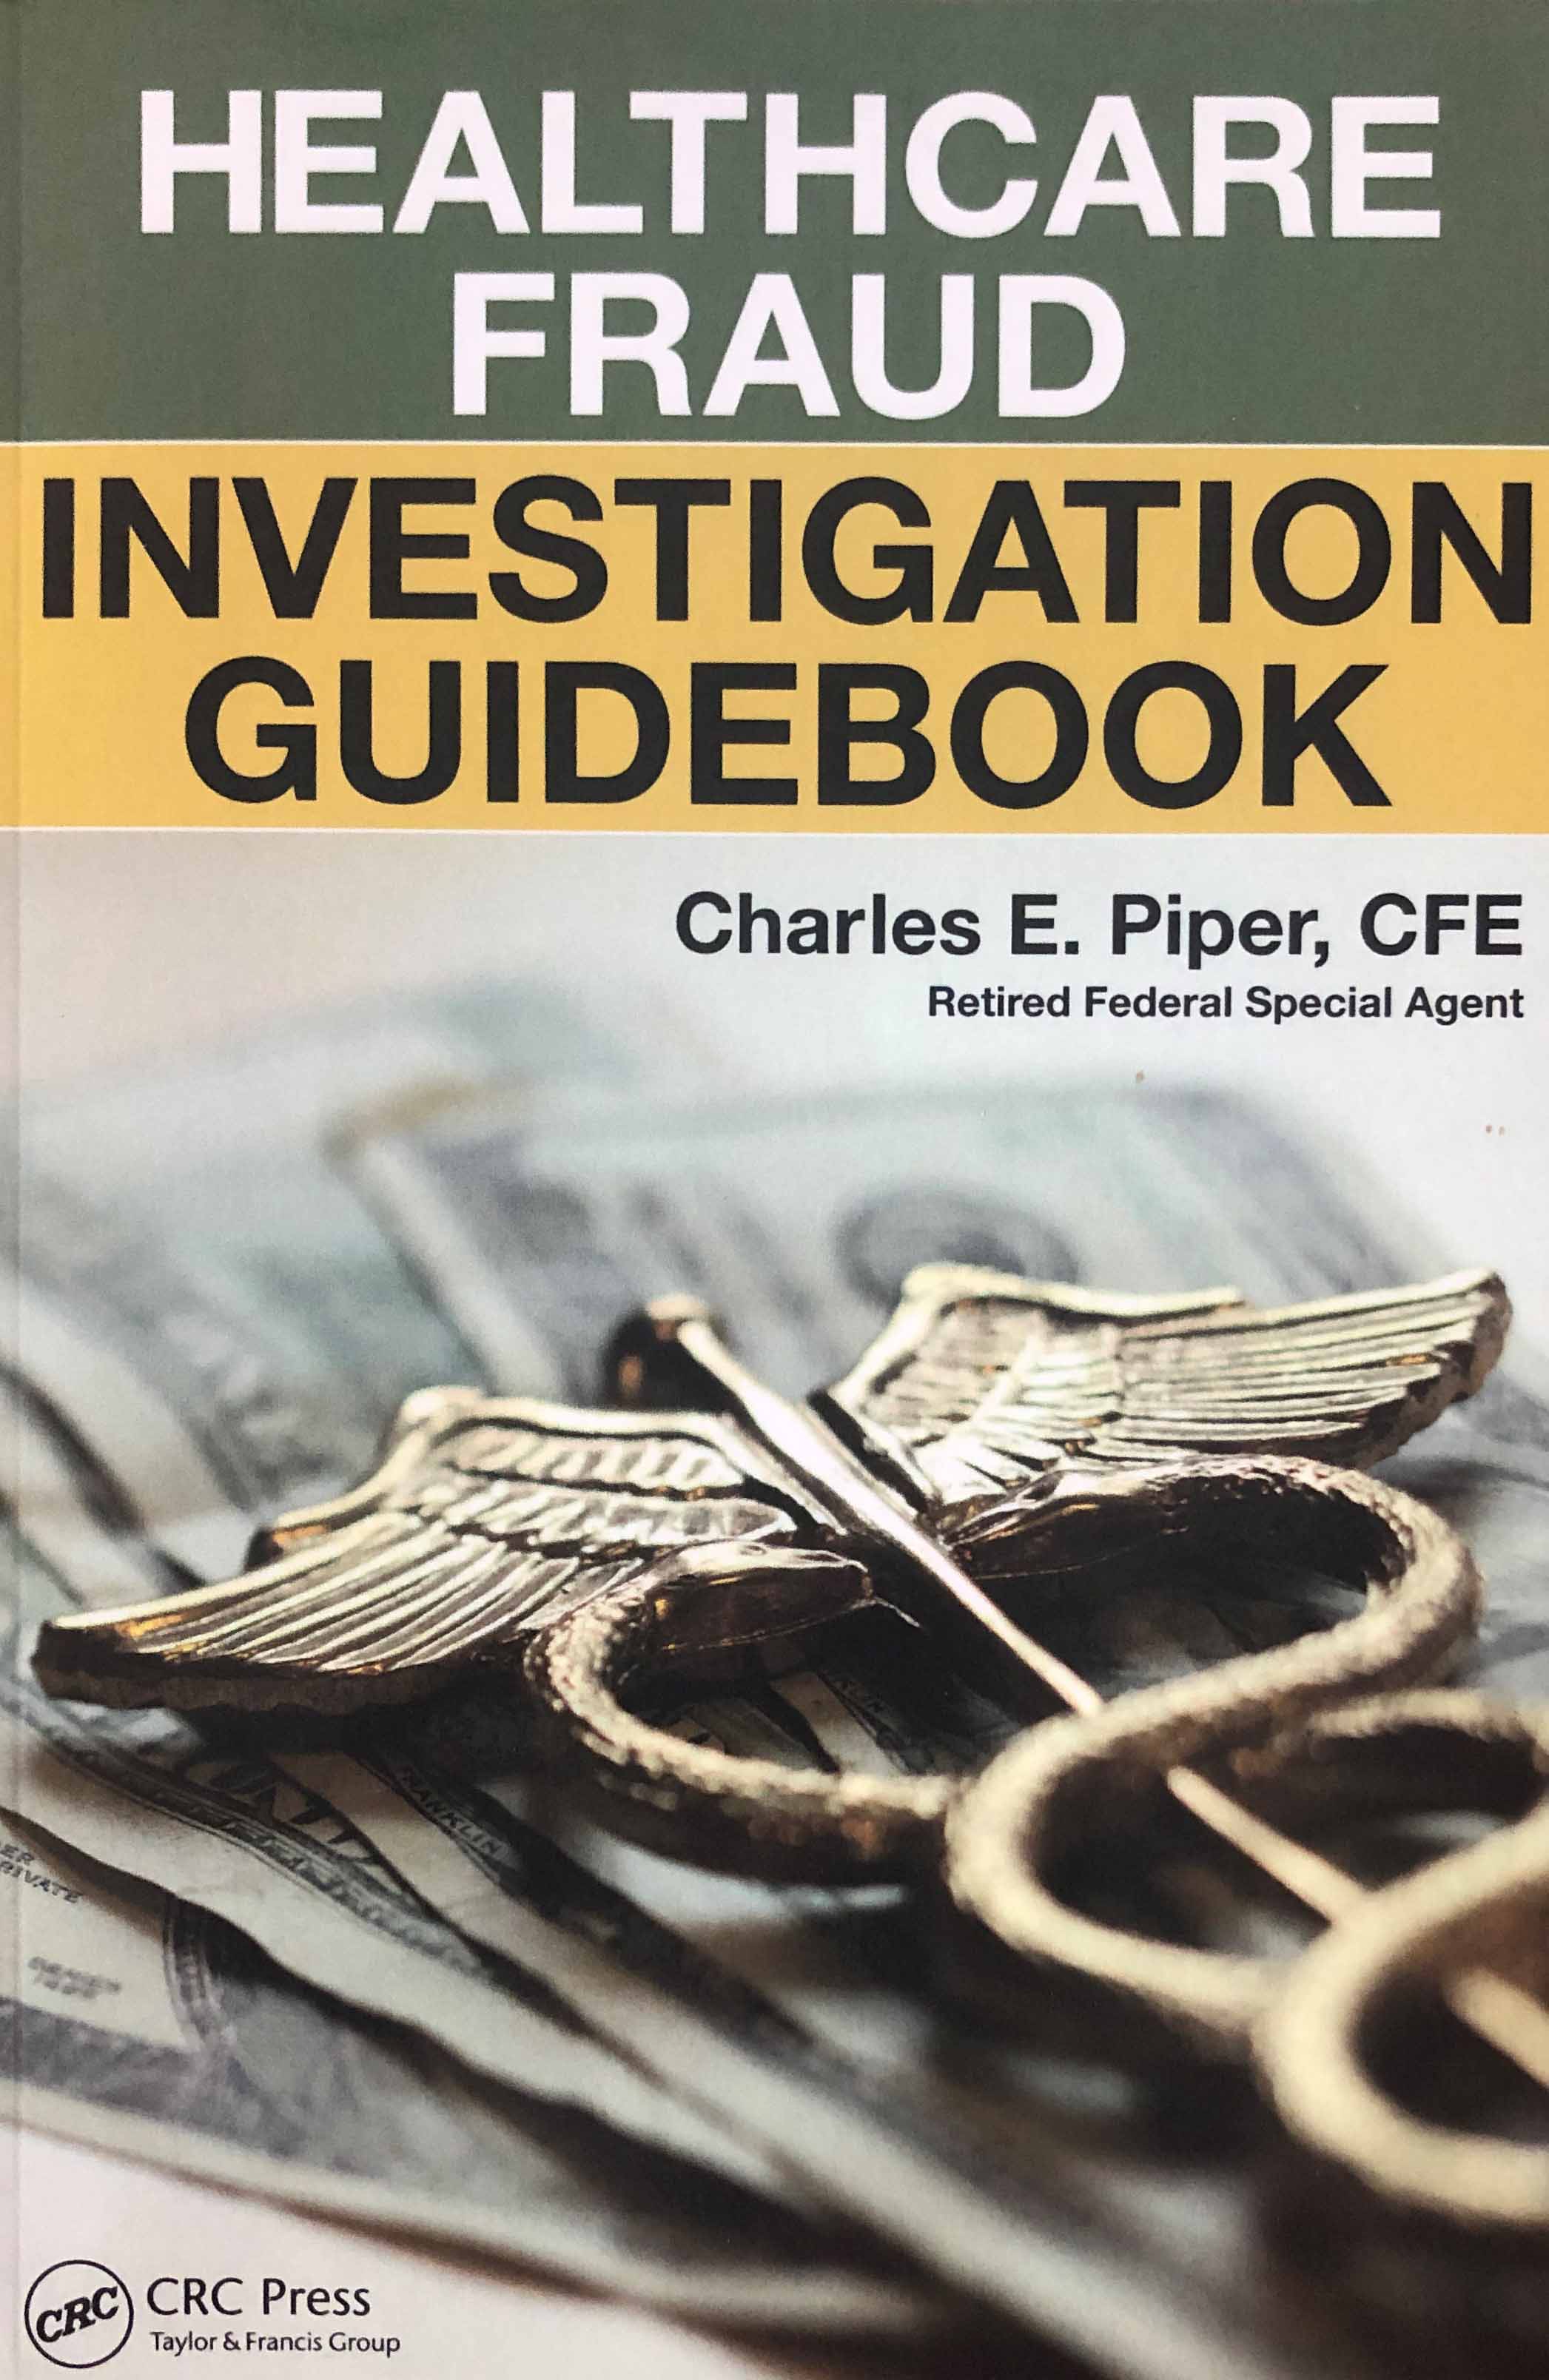 Description Healthcare Fraud Investigation Guidebook